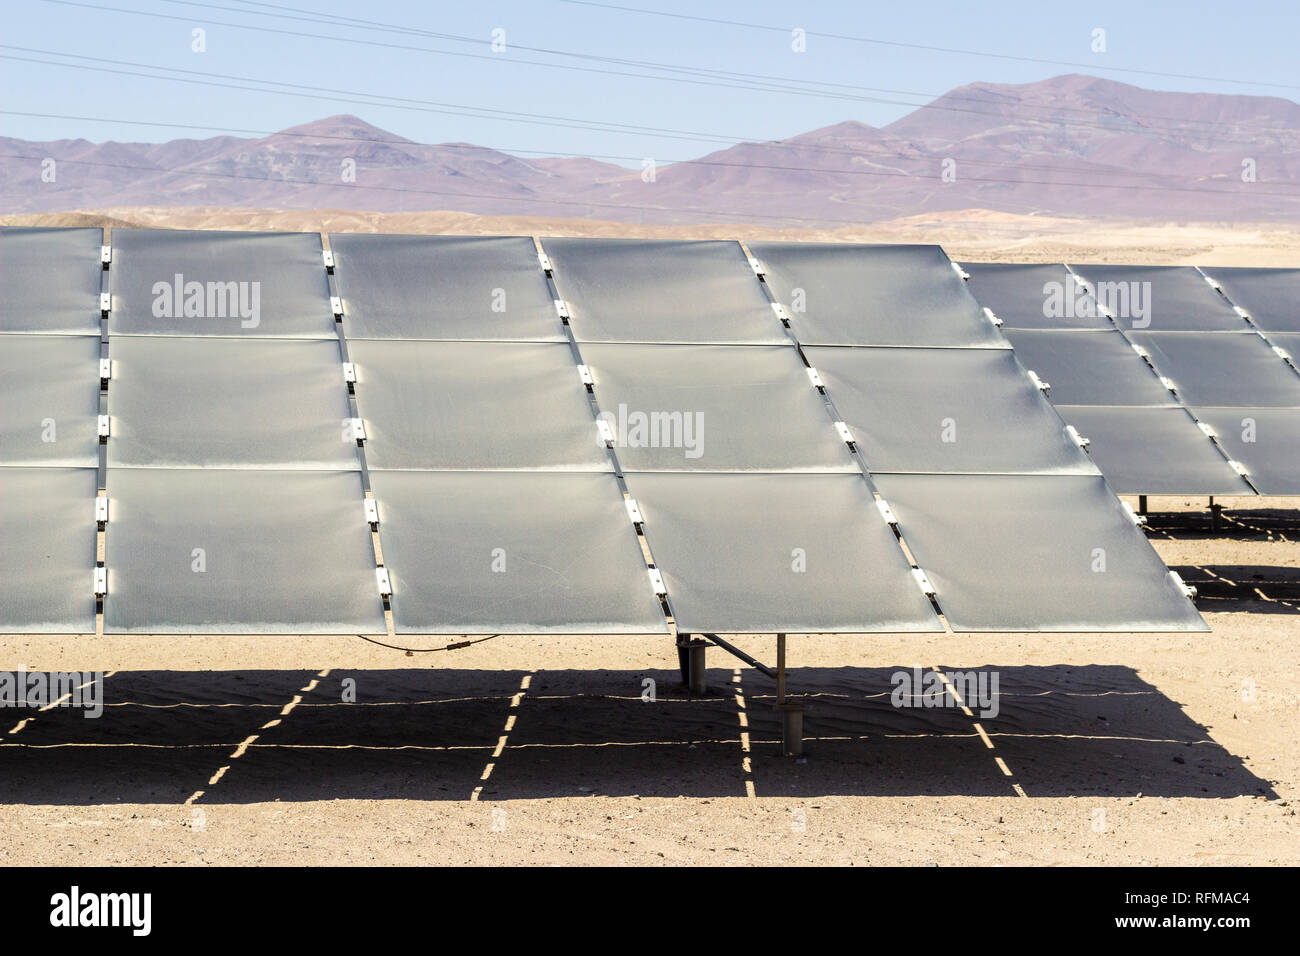 Verschmutzung und Staub über Solarenergiemodulen in einer trockenen Umgebung in der Atacama Wüste. Viel Staub über der Moduloberfläche und kein Wasser zum Reinigen Stockfoto